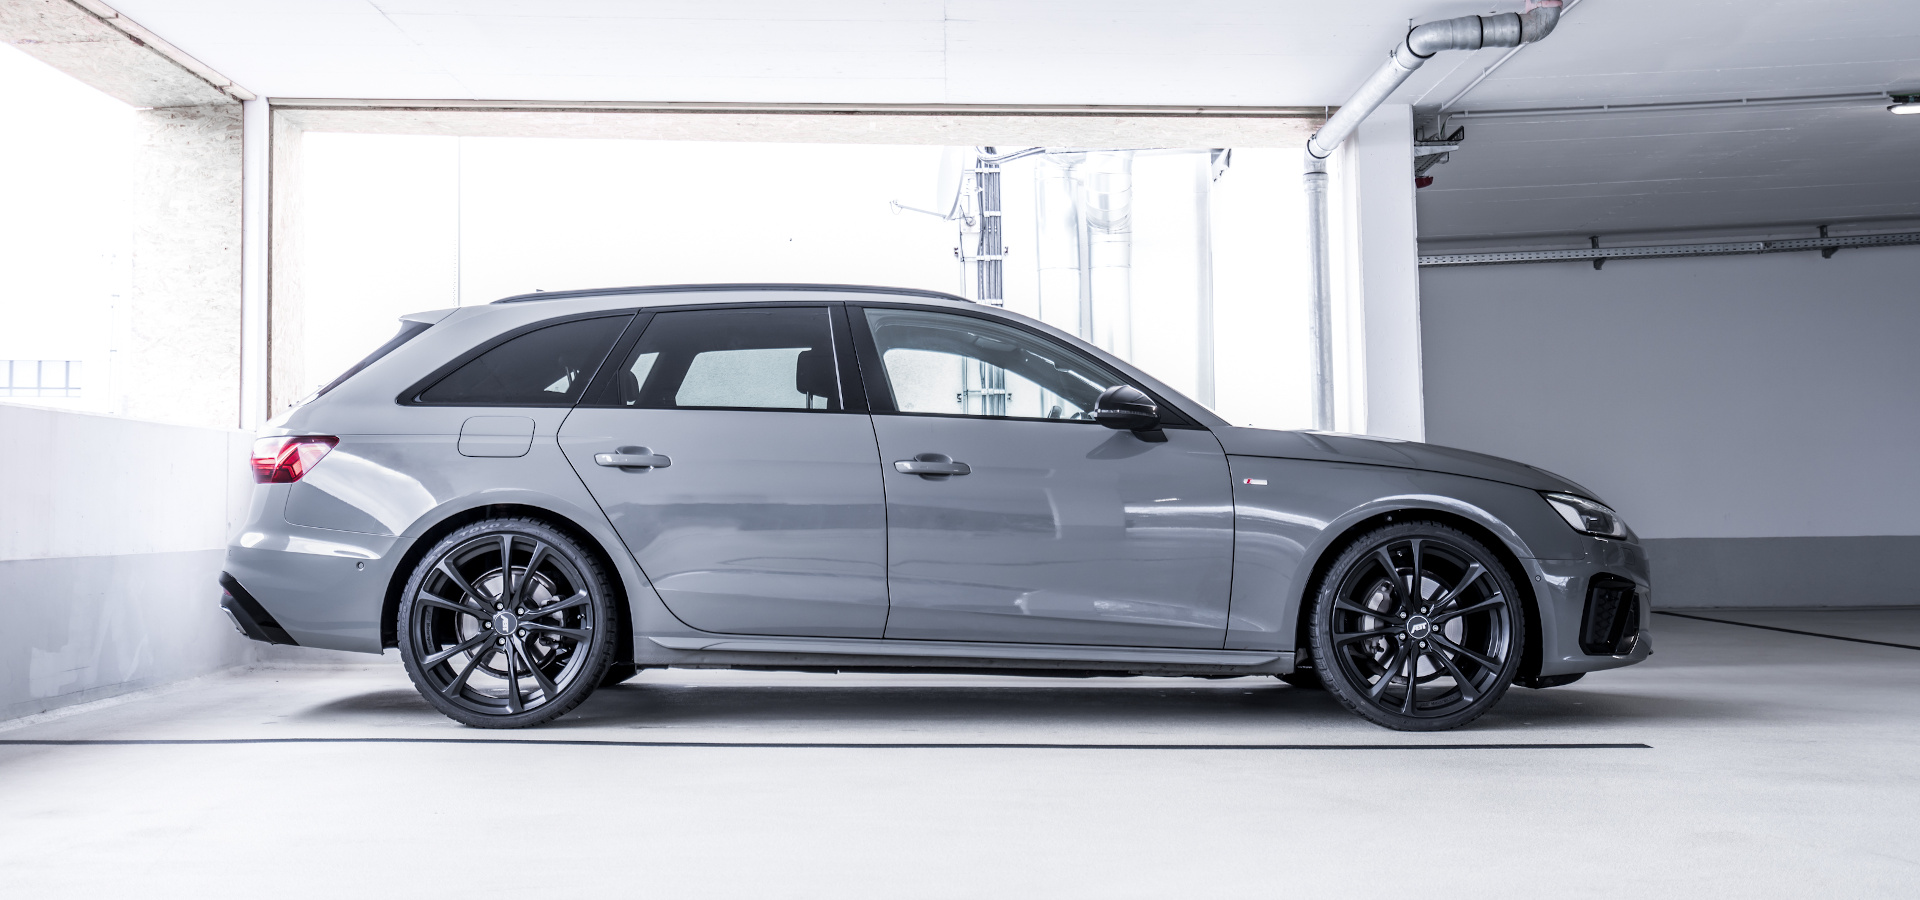 Realistisch Architectuur schrijven Audi A4 - Audi Tuning, VW Tuning, Chiptuning von ABT Sportsline.